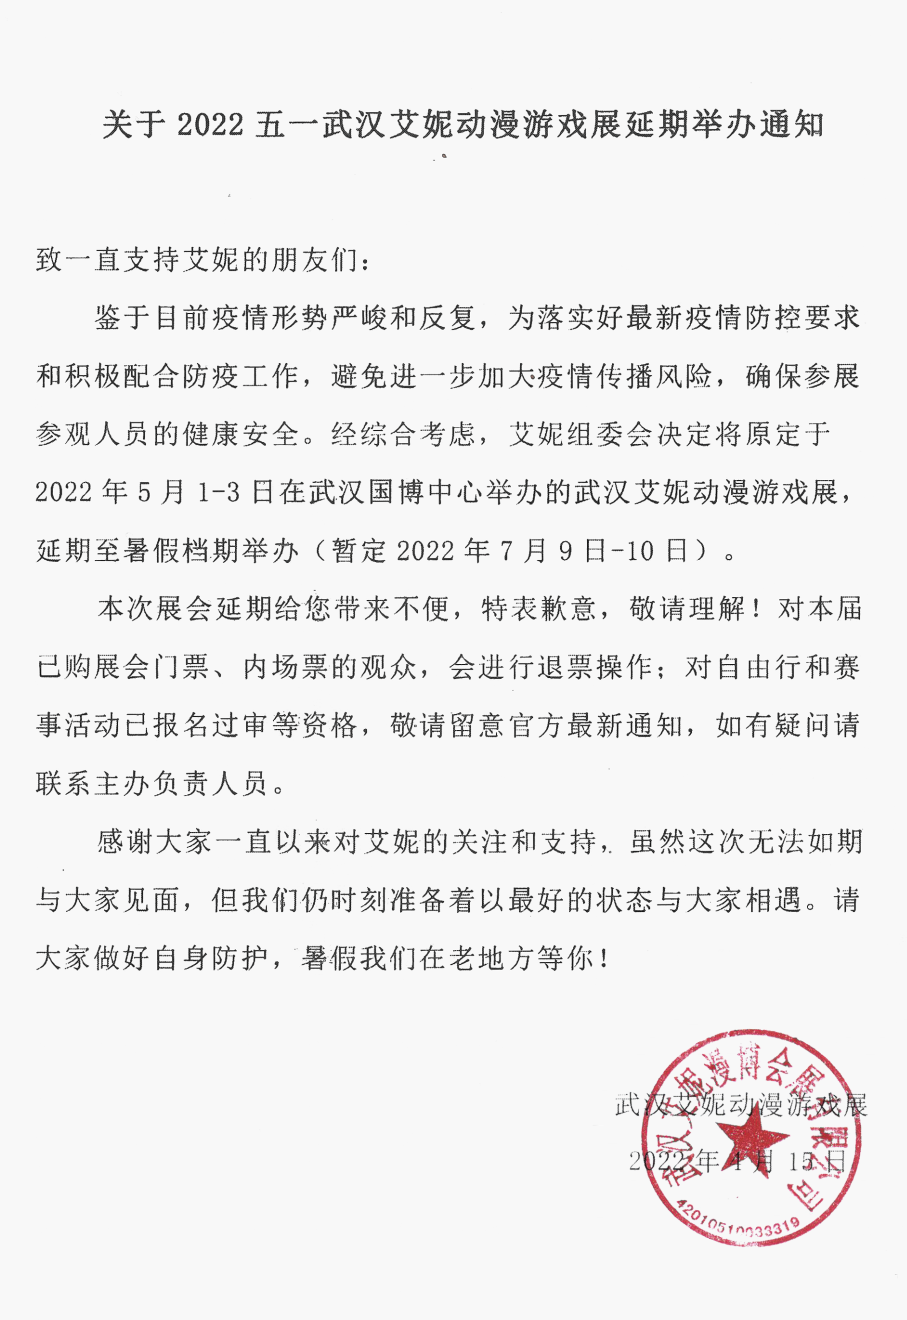 「武汉艾妮动漫游戏展」官方宣布延期举办